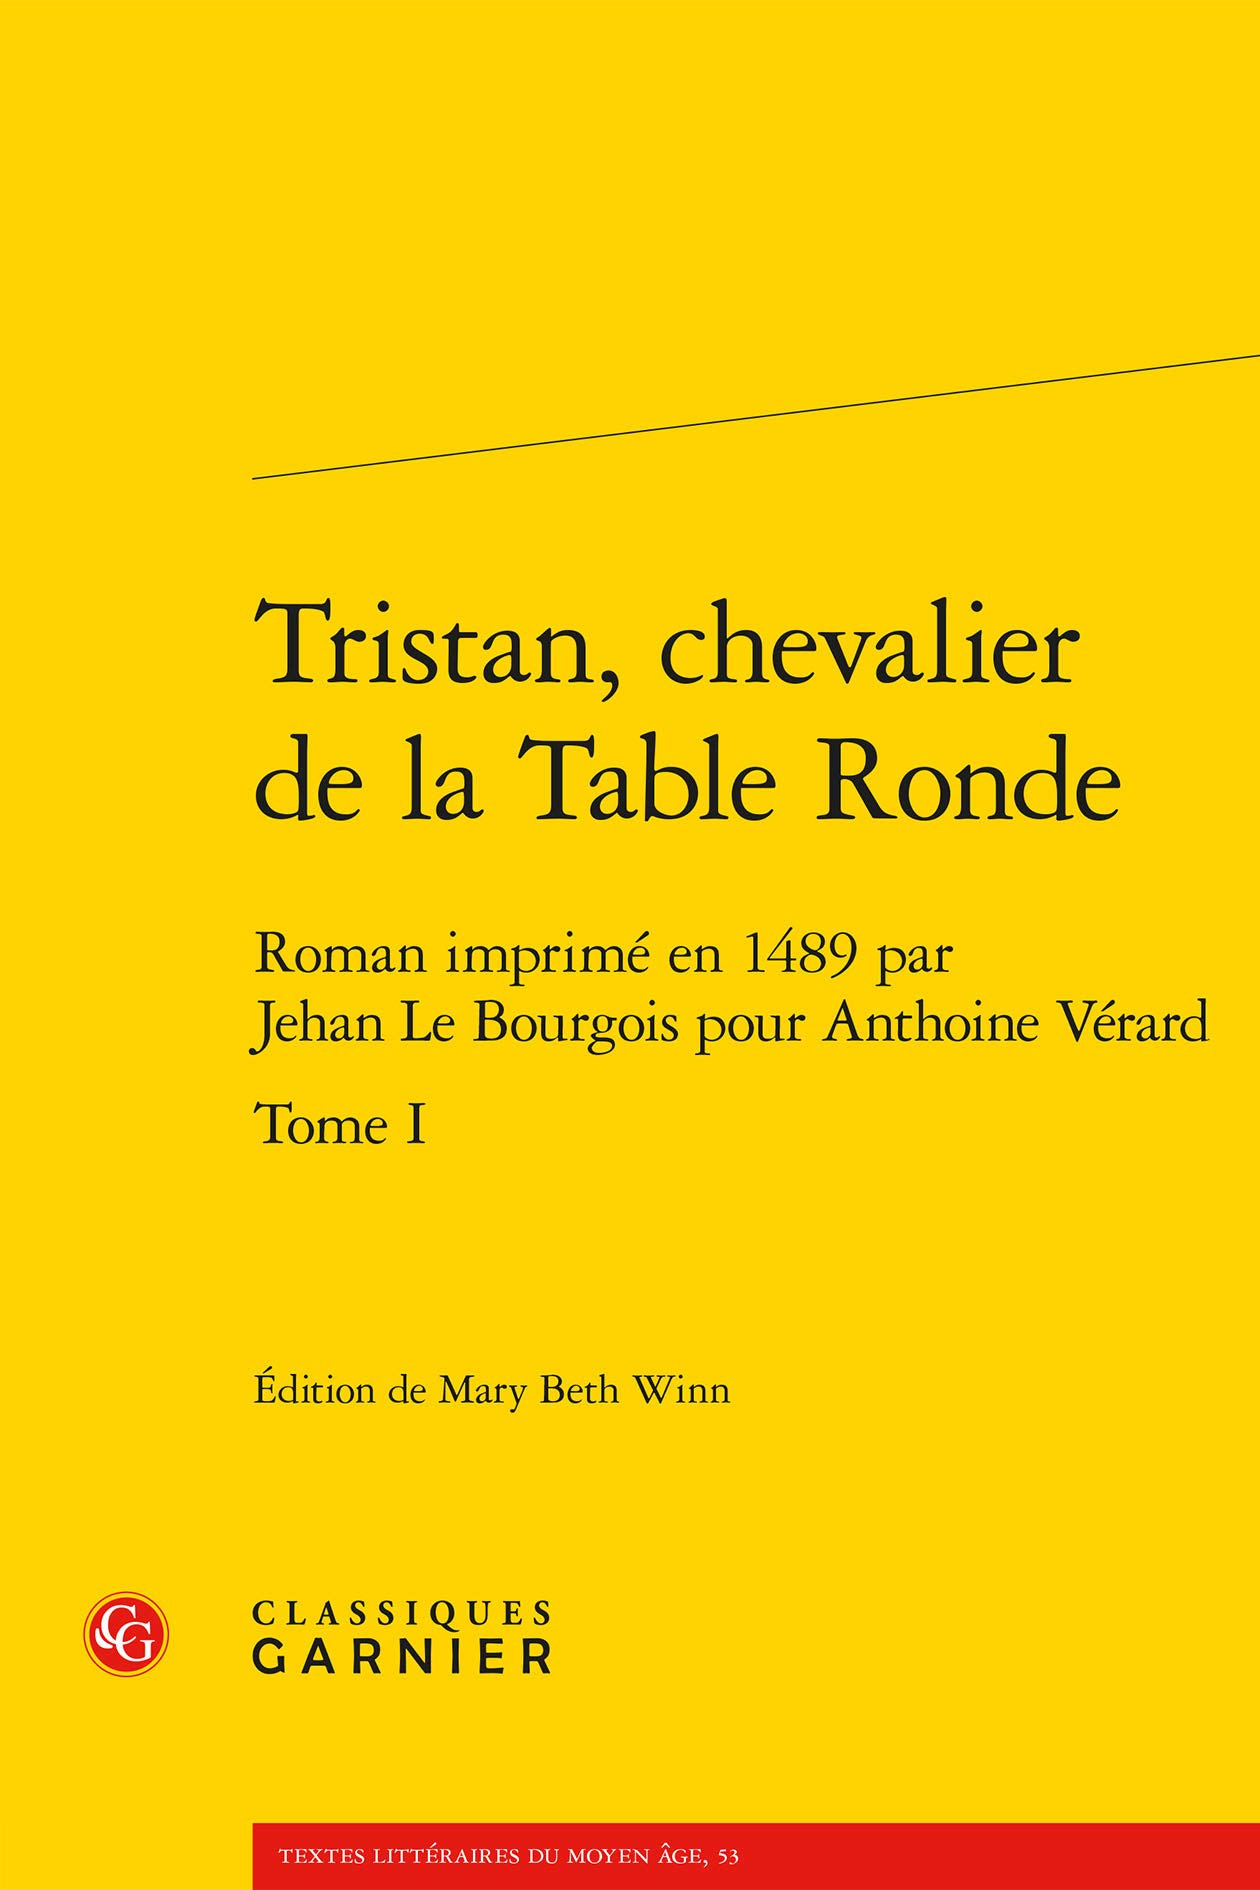 Tristan, chevalier de la Table Ronde. Tome I Roman imprimé en 1489 par Jehan Le Bourgois pour Anthoine Vérard. Edited by Mary Beth Winn